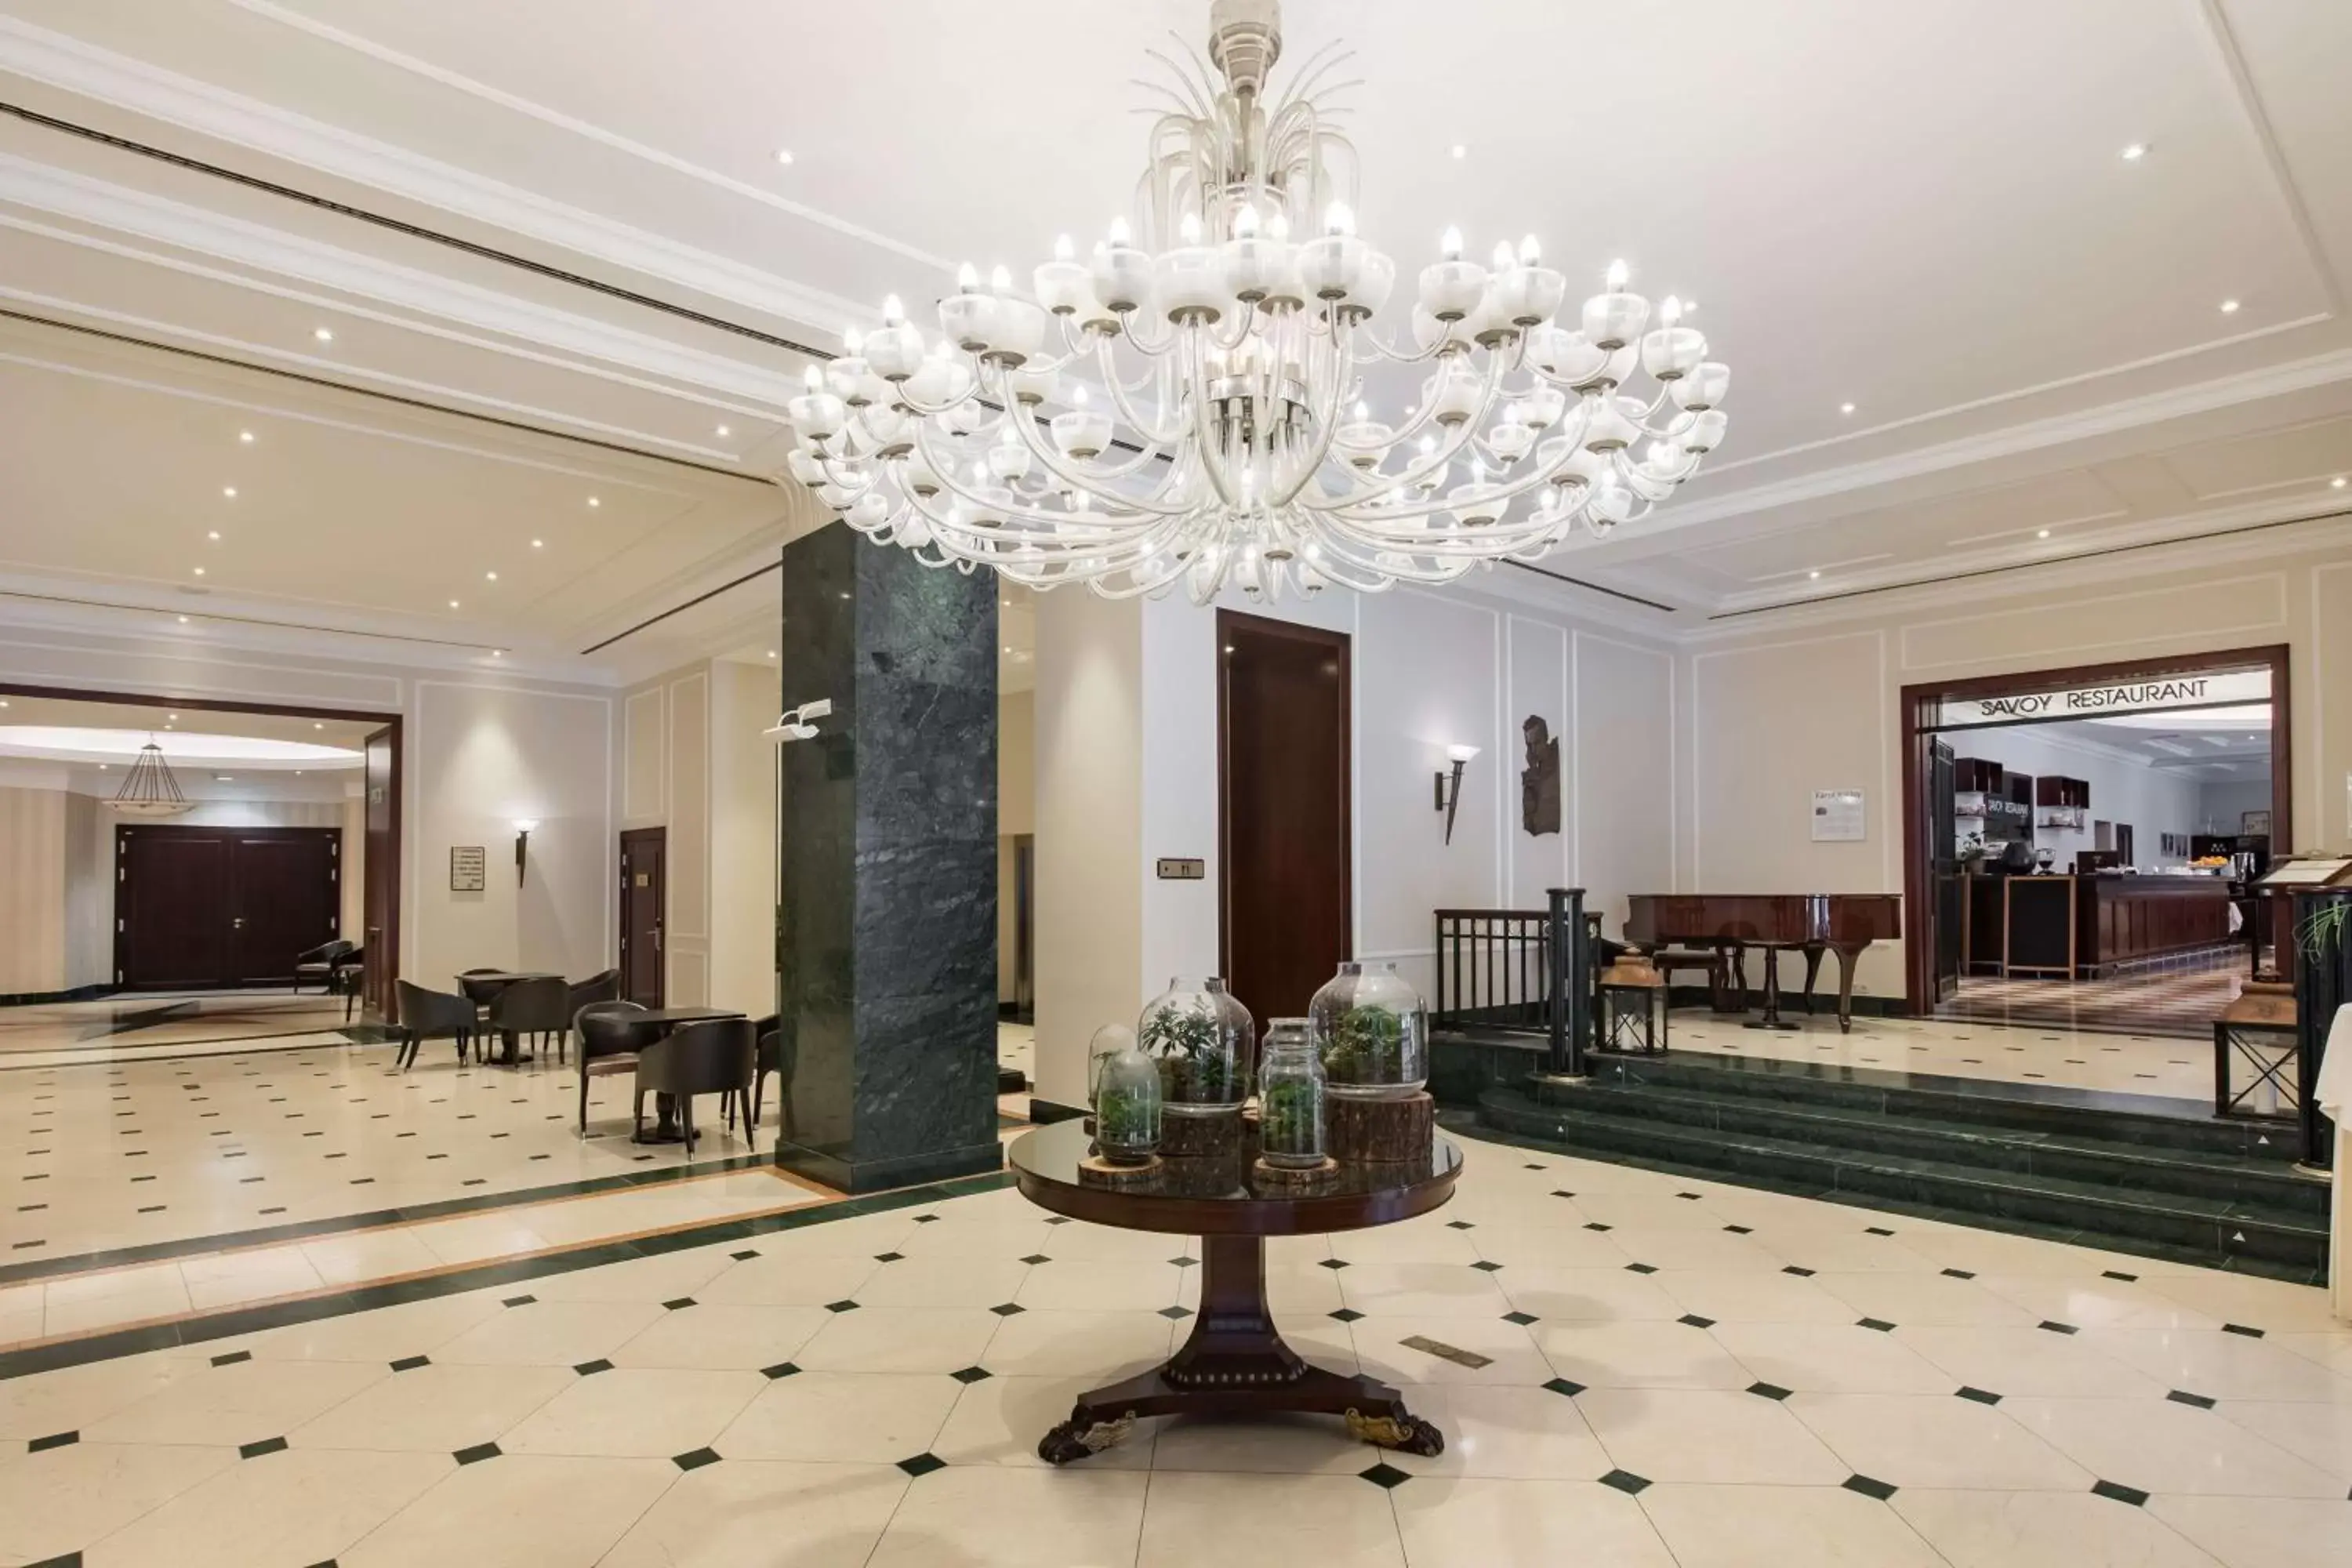 Lobby or reception, Lobby/Reception in Radisson Blu Carlton Hotel, Bratislava